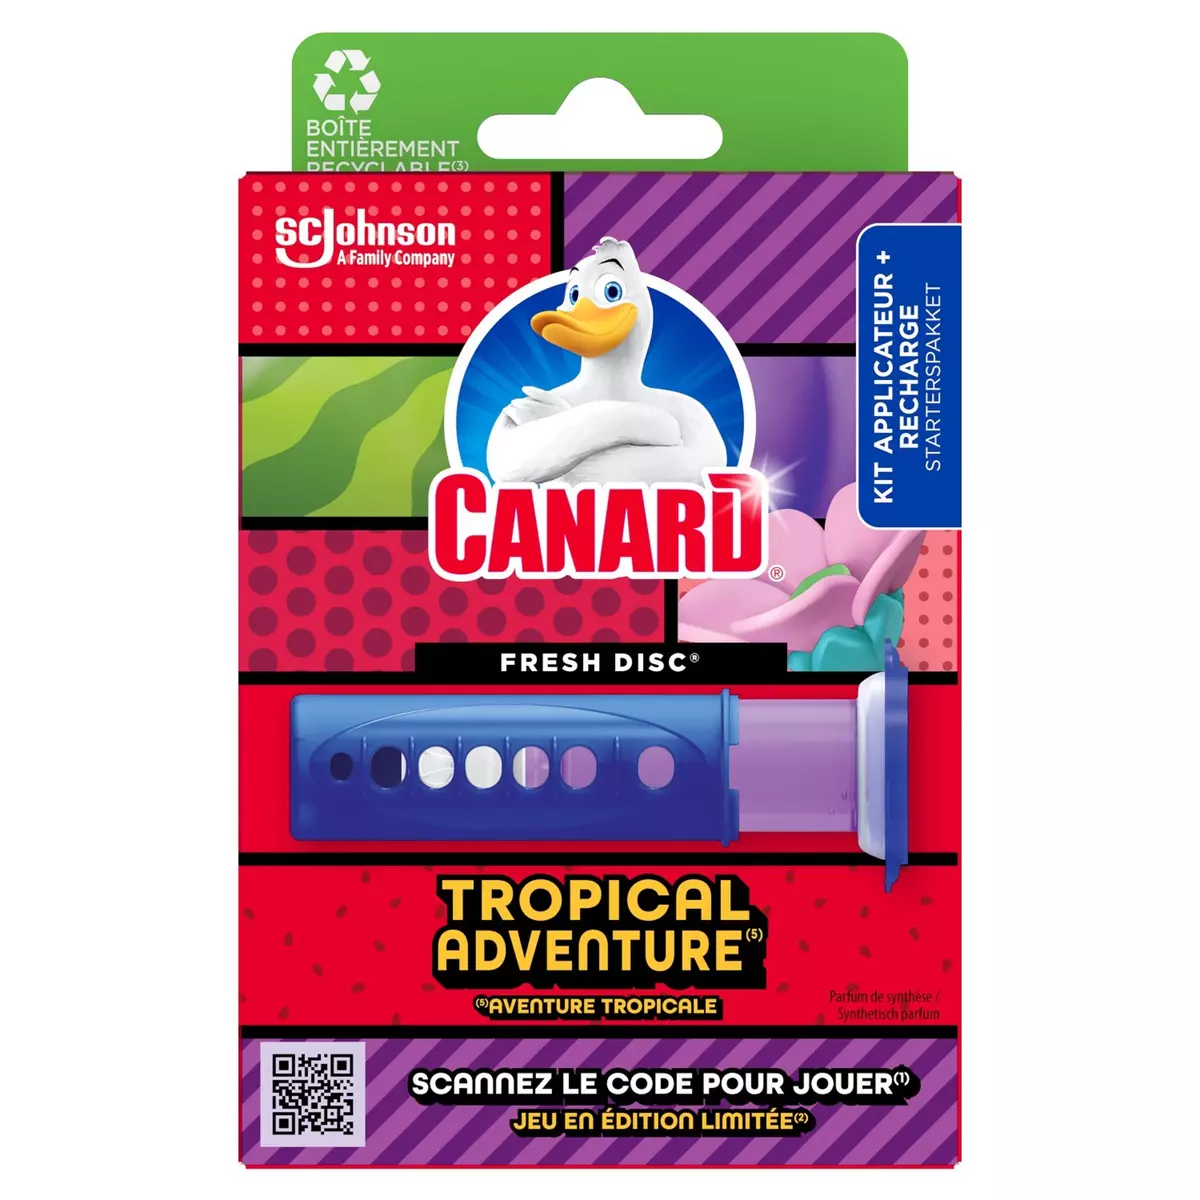 CANARD Fresh disc tropical adventure applicateur et recharge x1